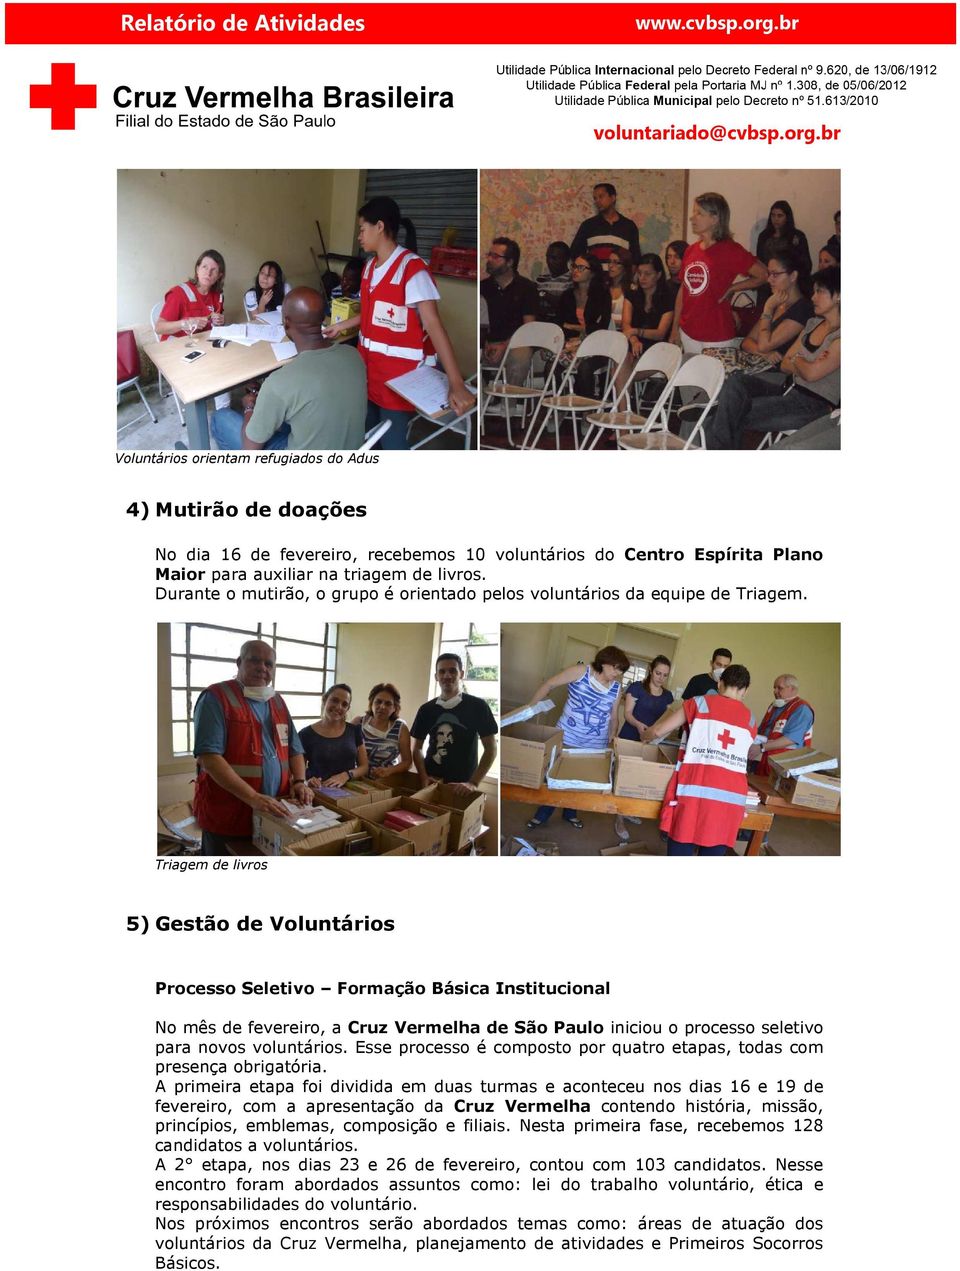 Triagem de livros 5) Gestão de Voluntários Processo Seletivo Formação Básica Institucional No mês de fevereiro, a Cruz Vermelha de São Paulo iniciou o processo seletivo para novos voluntários.